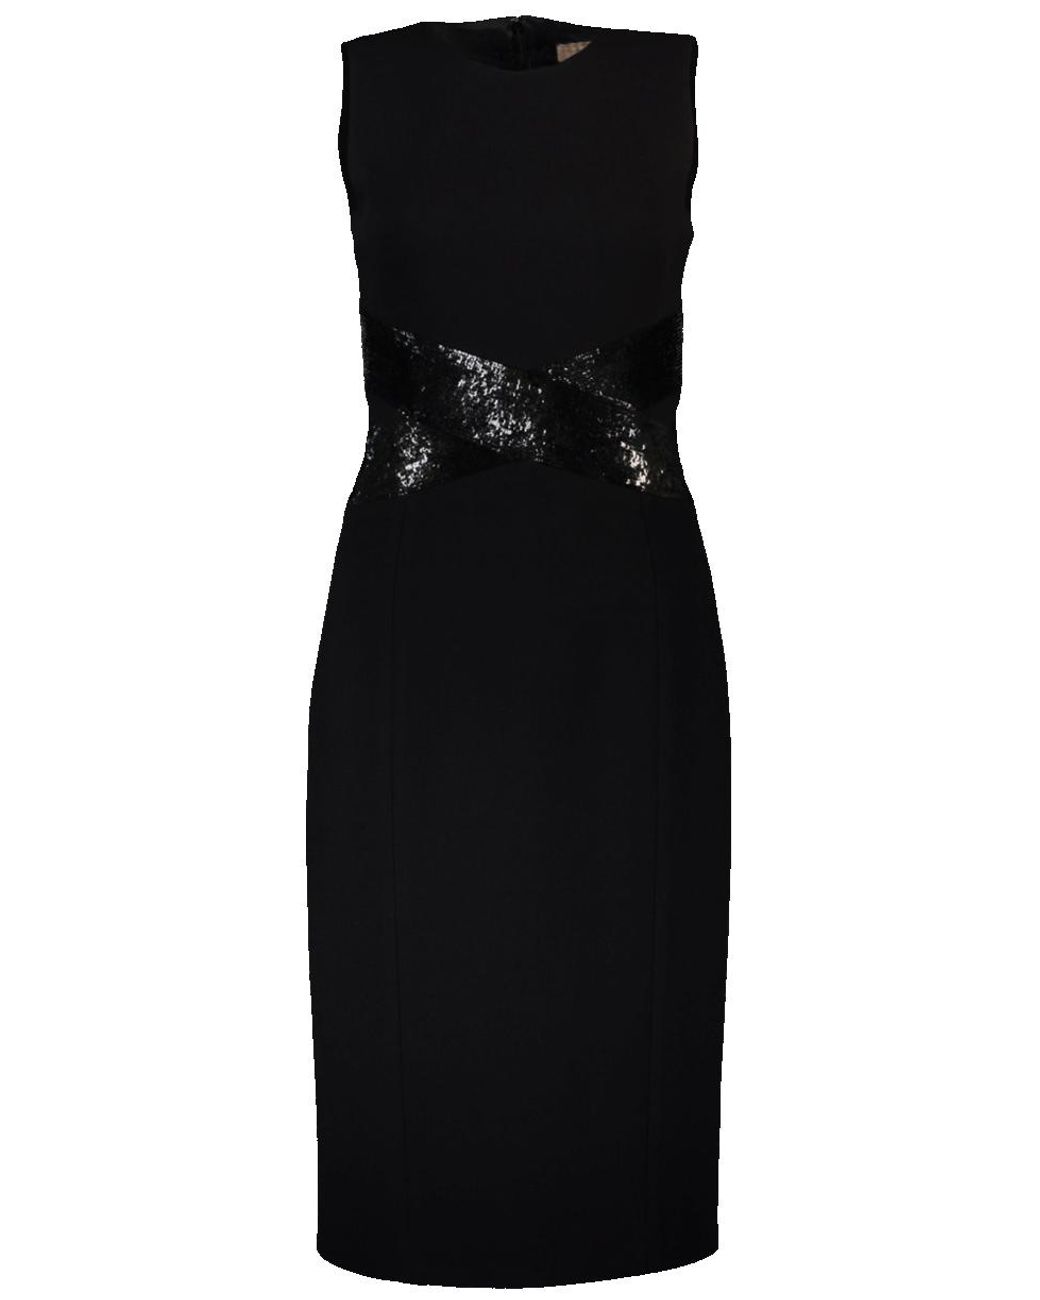 Michael Kors Wool Contrast Paillette X-sheath Dress in Black - Lyst